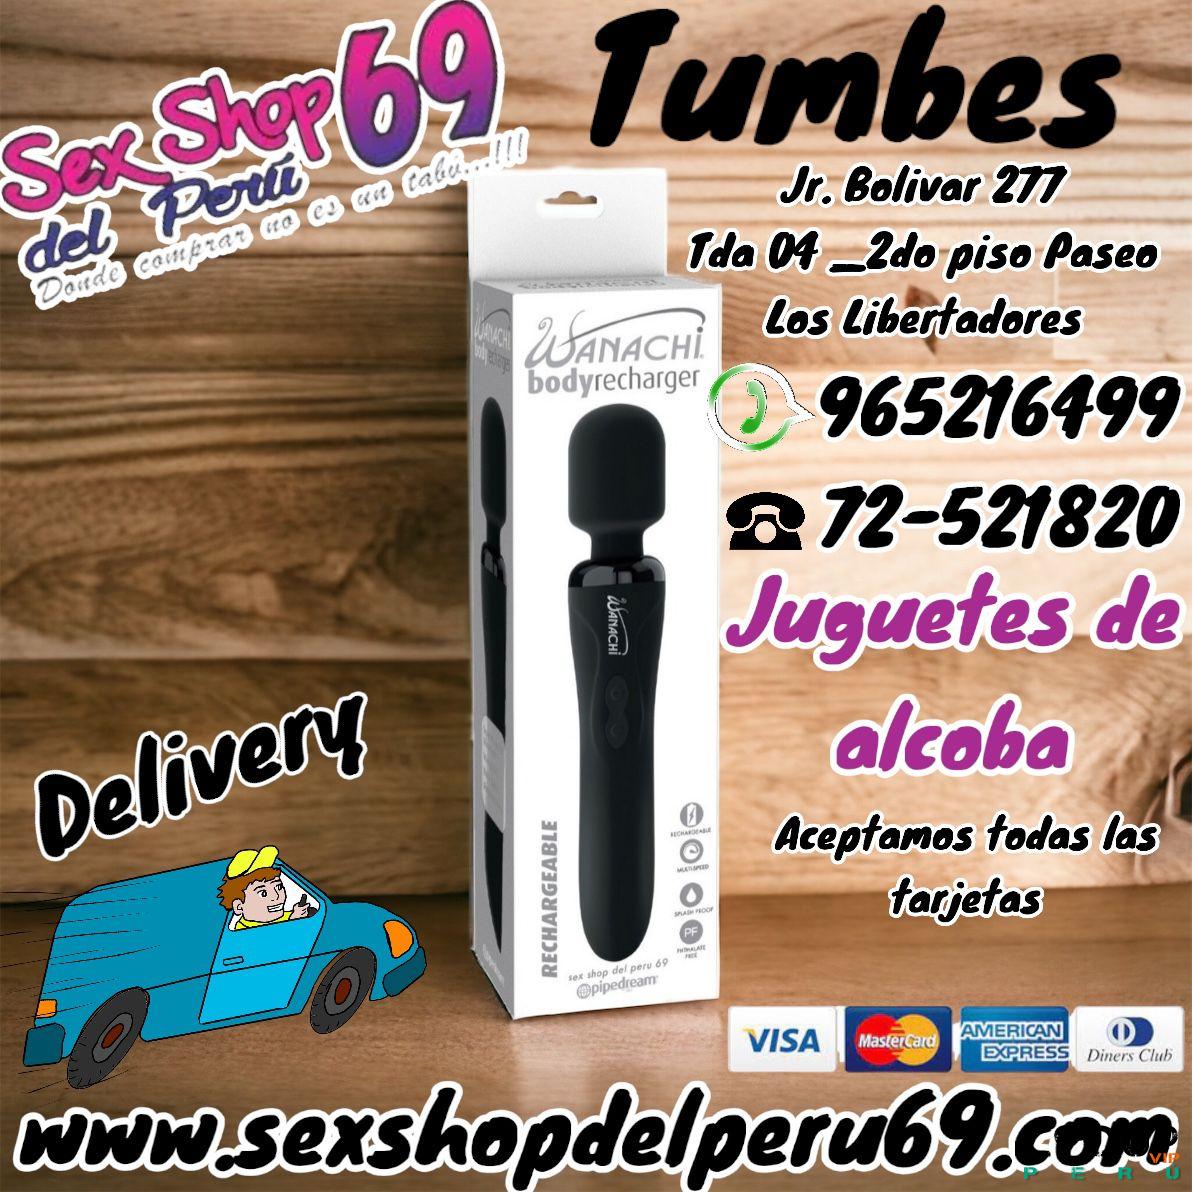 Sex Shop Arequipa: La mejor variedad de juguetes intimos _sexshop69